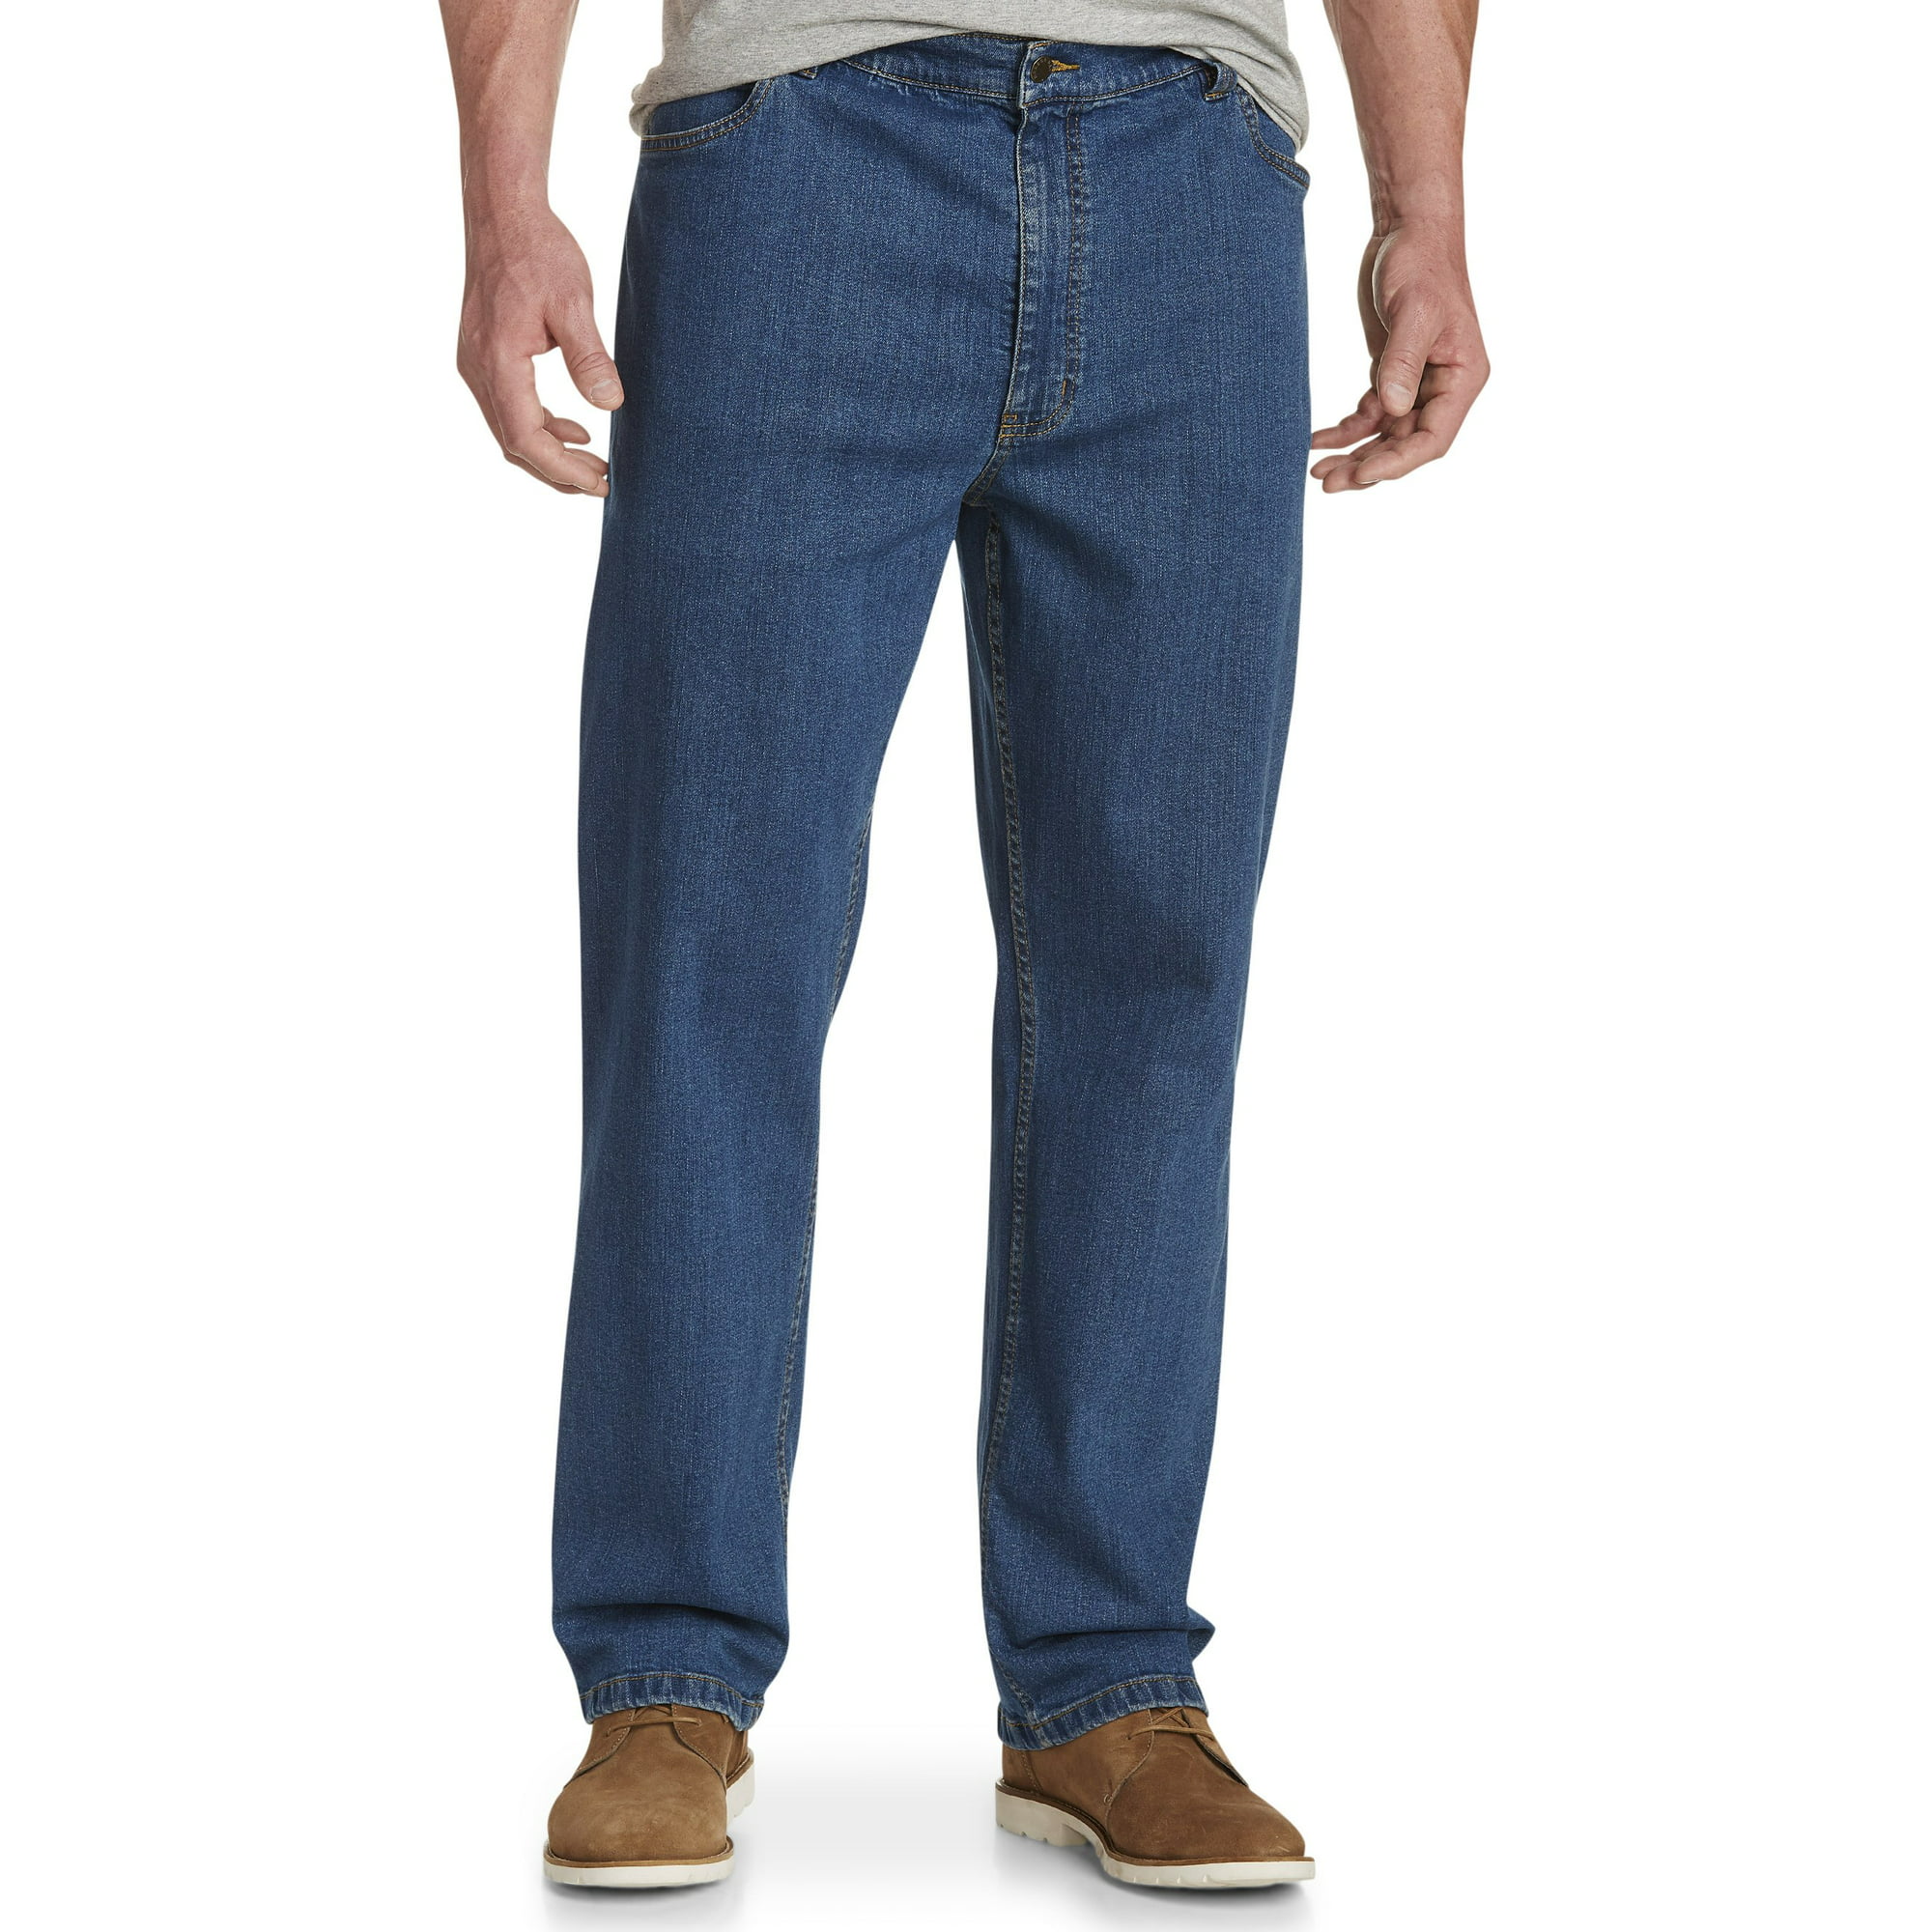 Harbor Bay DXL Big Men's Athletic-Fit Jeans, Wash, 48W X 28L - Walmart.com